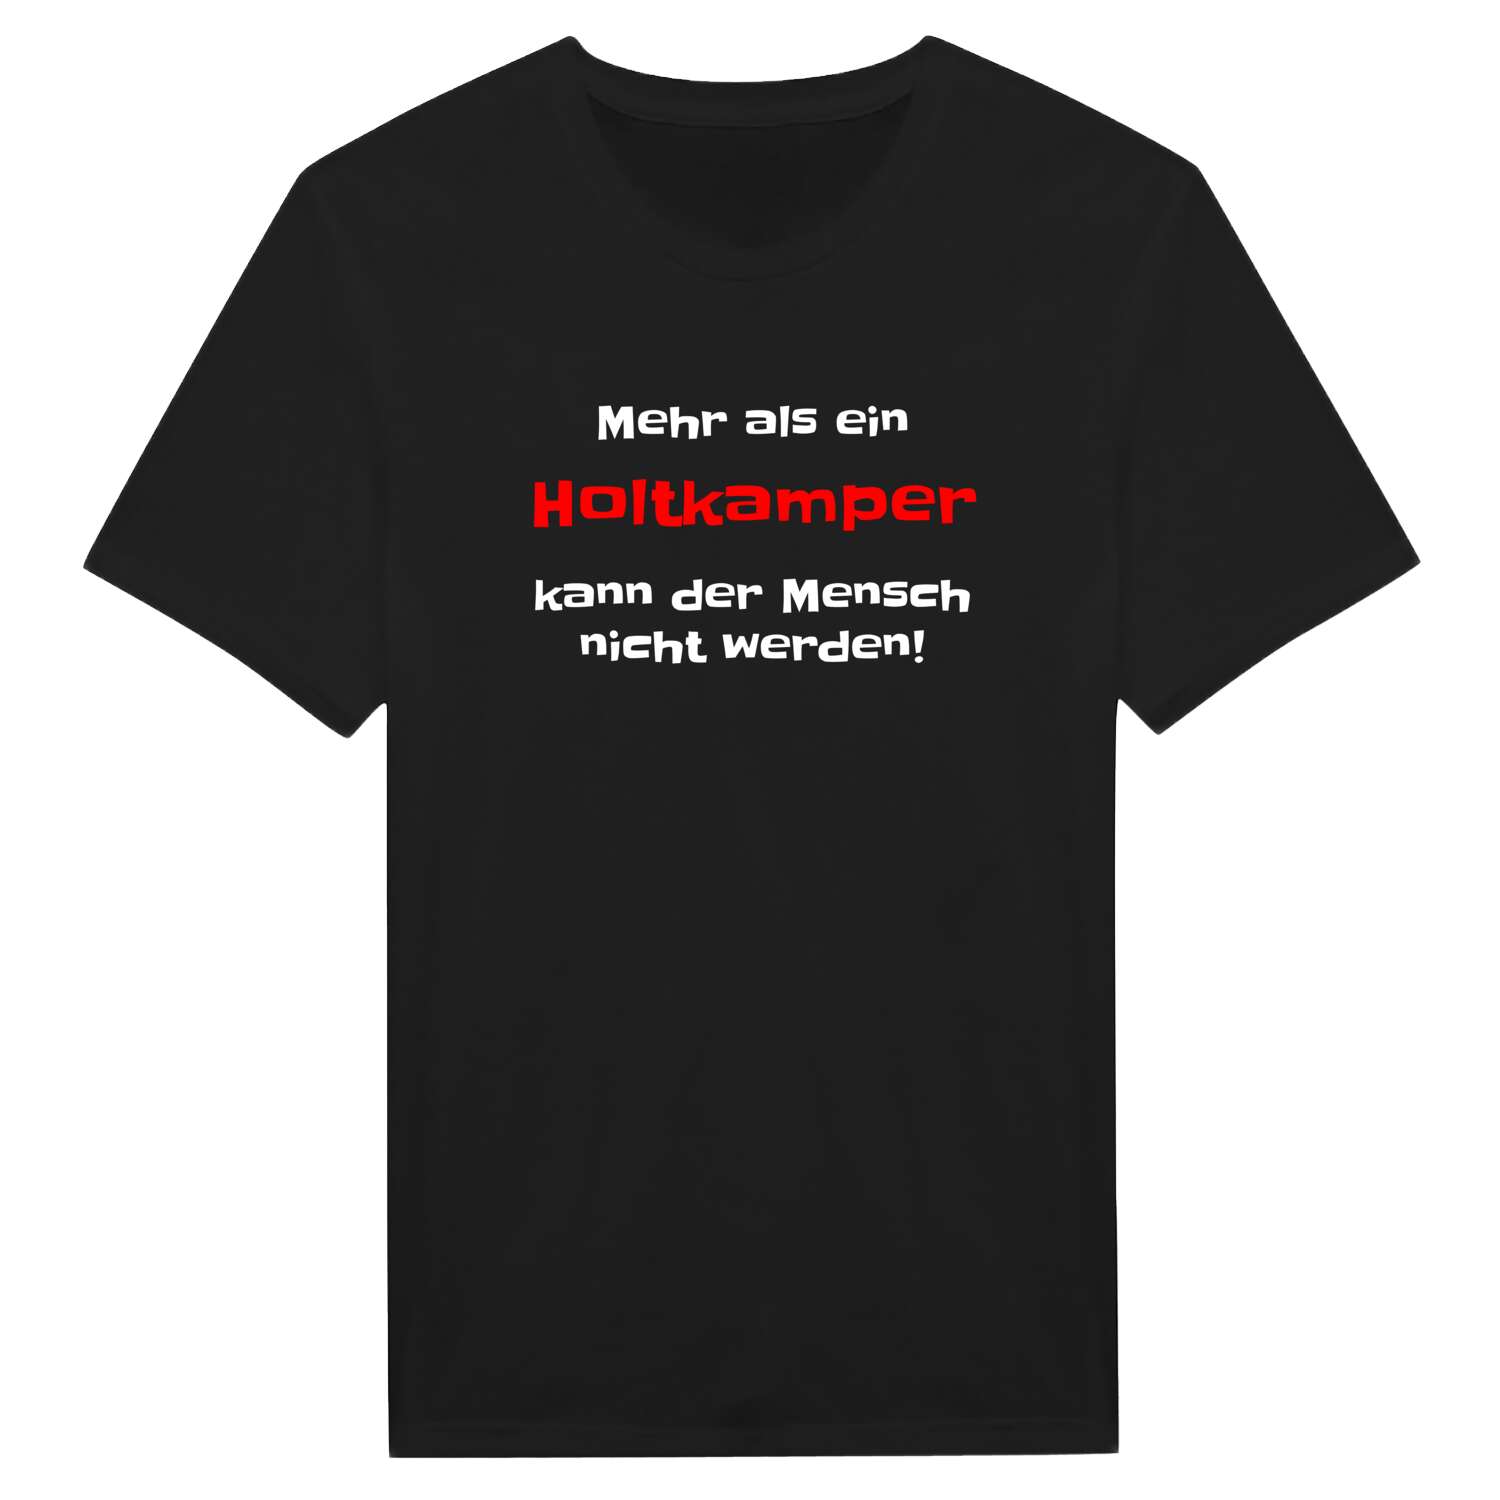 Holtkamp T-Shirt »Mehr als ein«